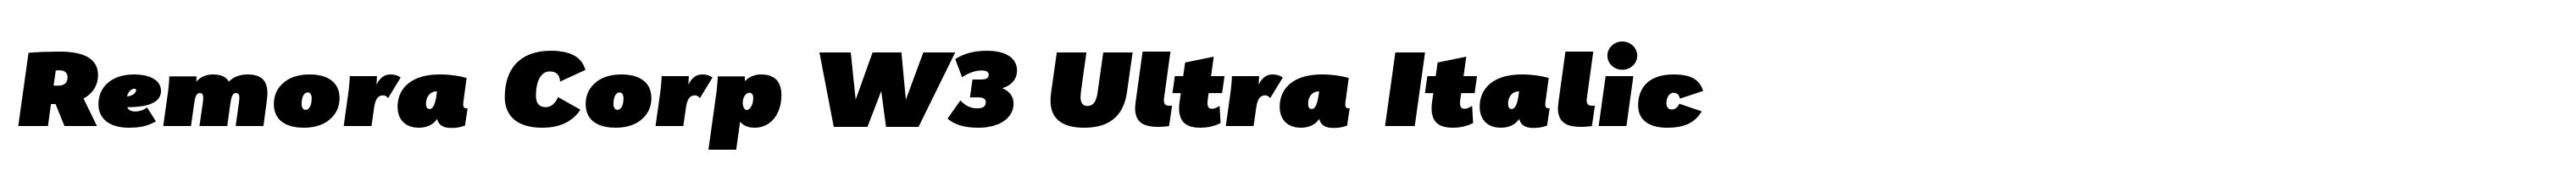 Remora Corp W3 Ultra Italic